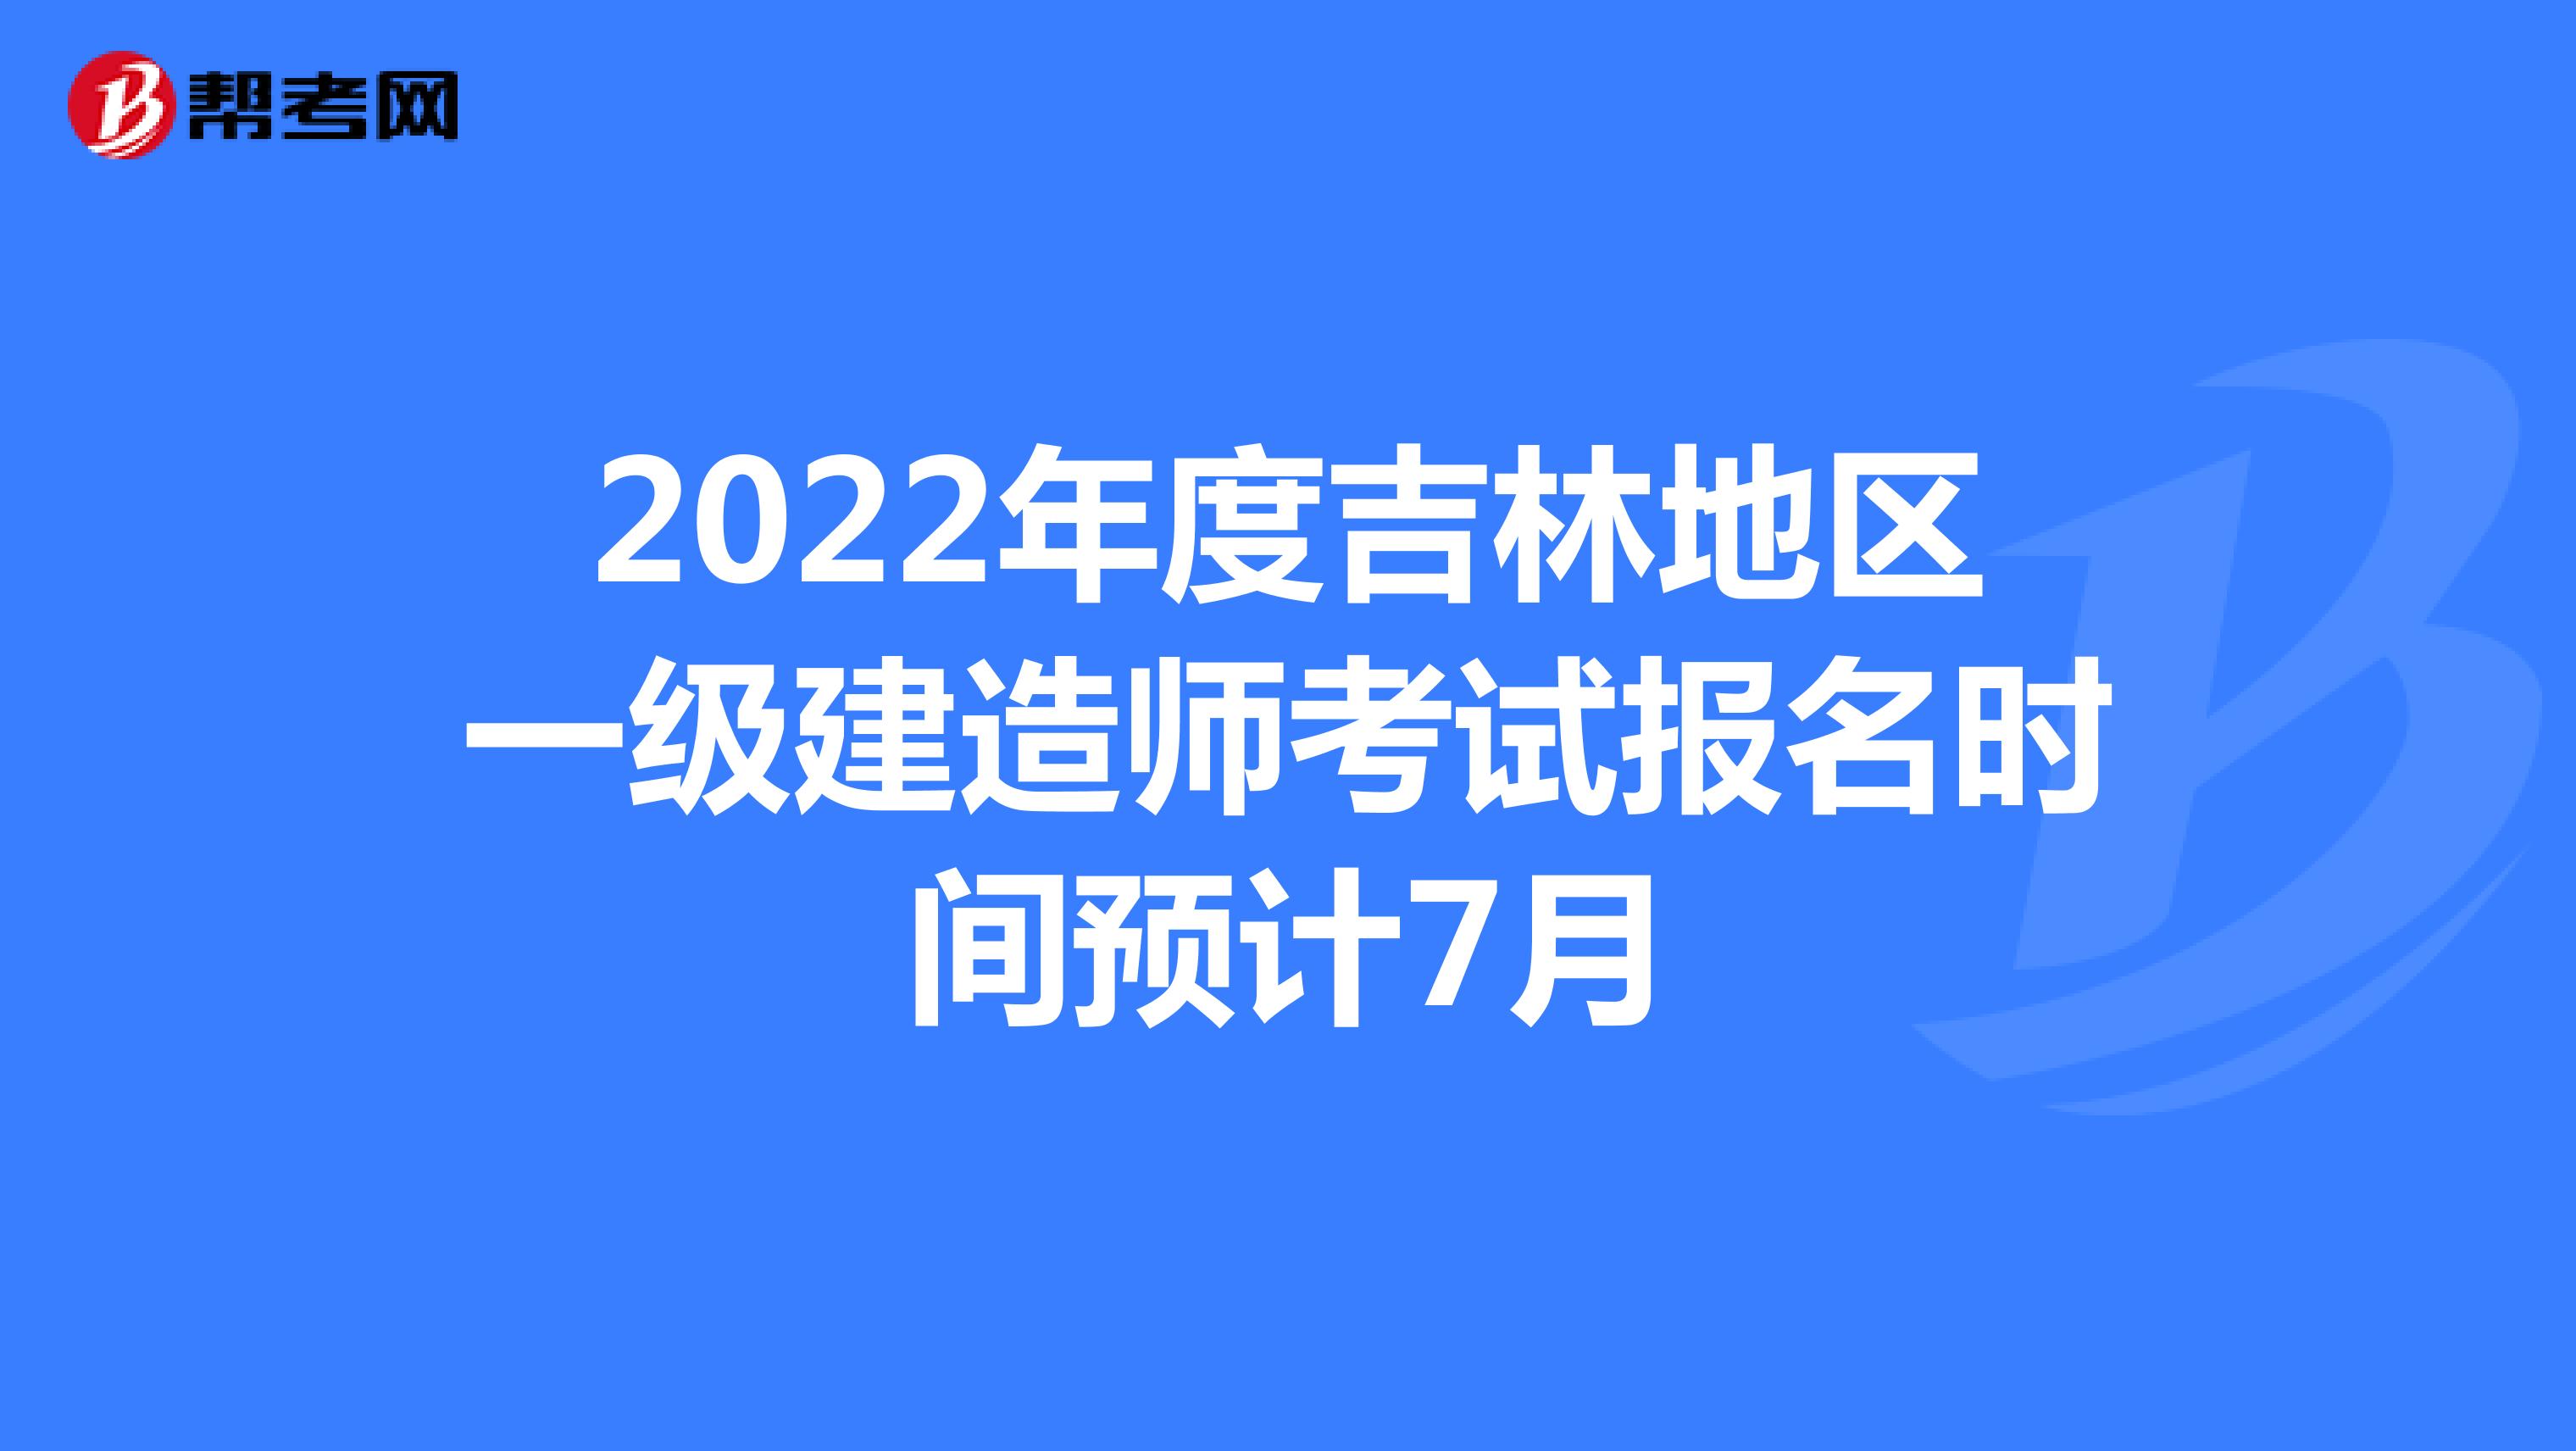 2022年度吉林地区一级建造师考试报名时间预计7月